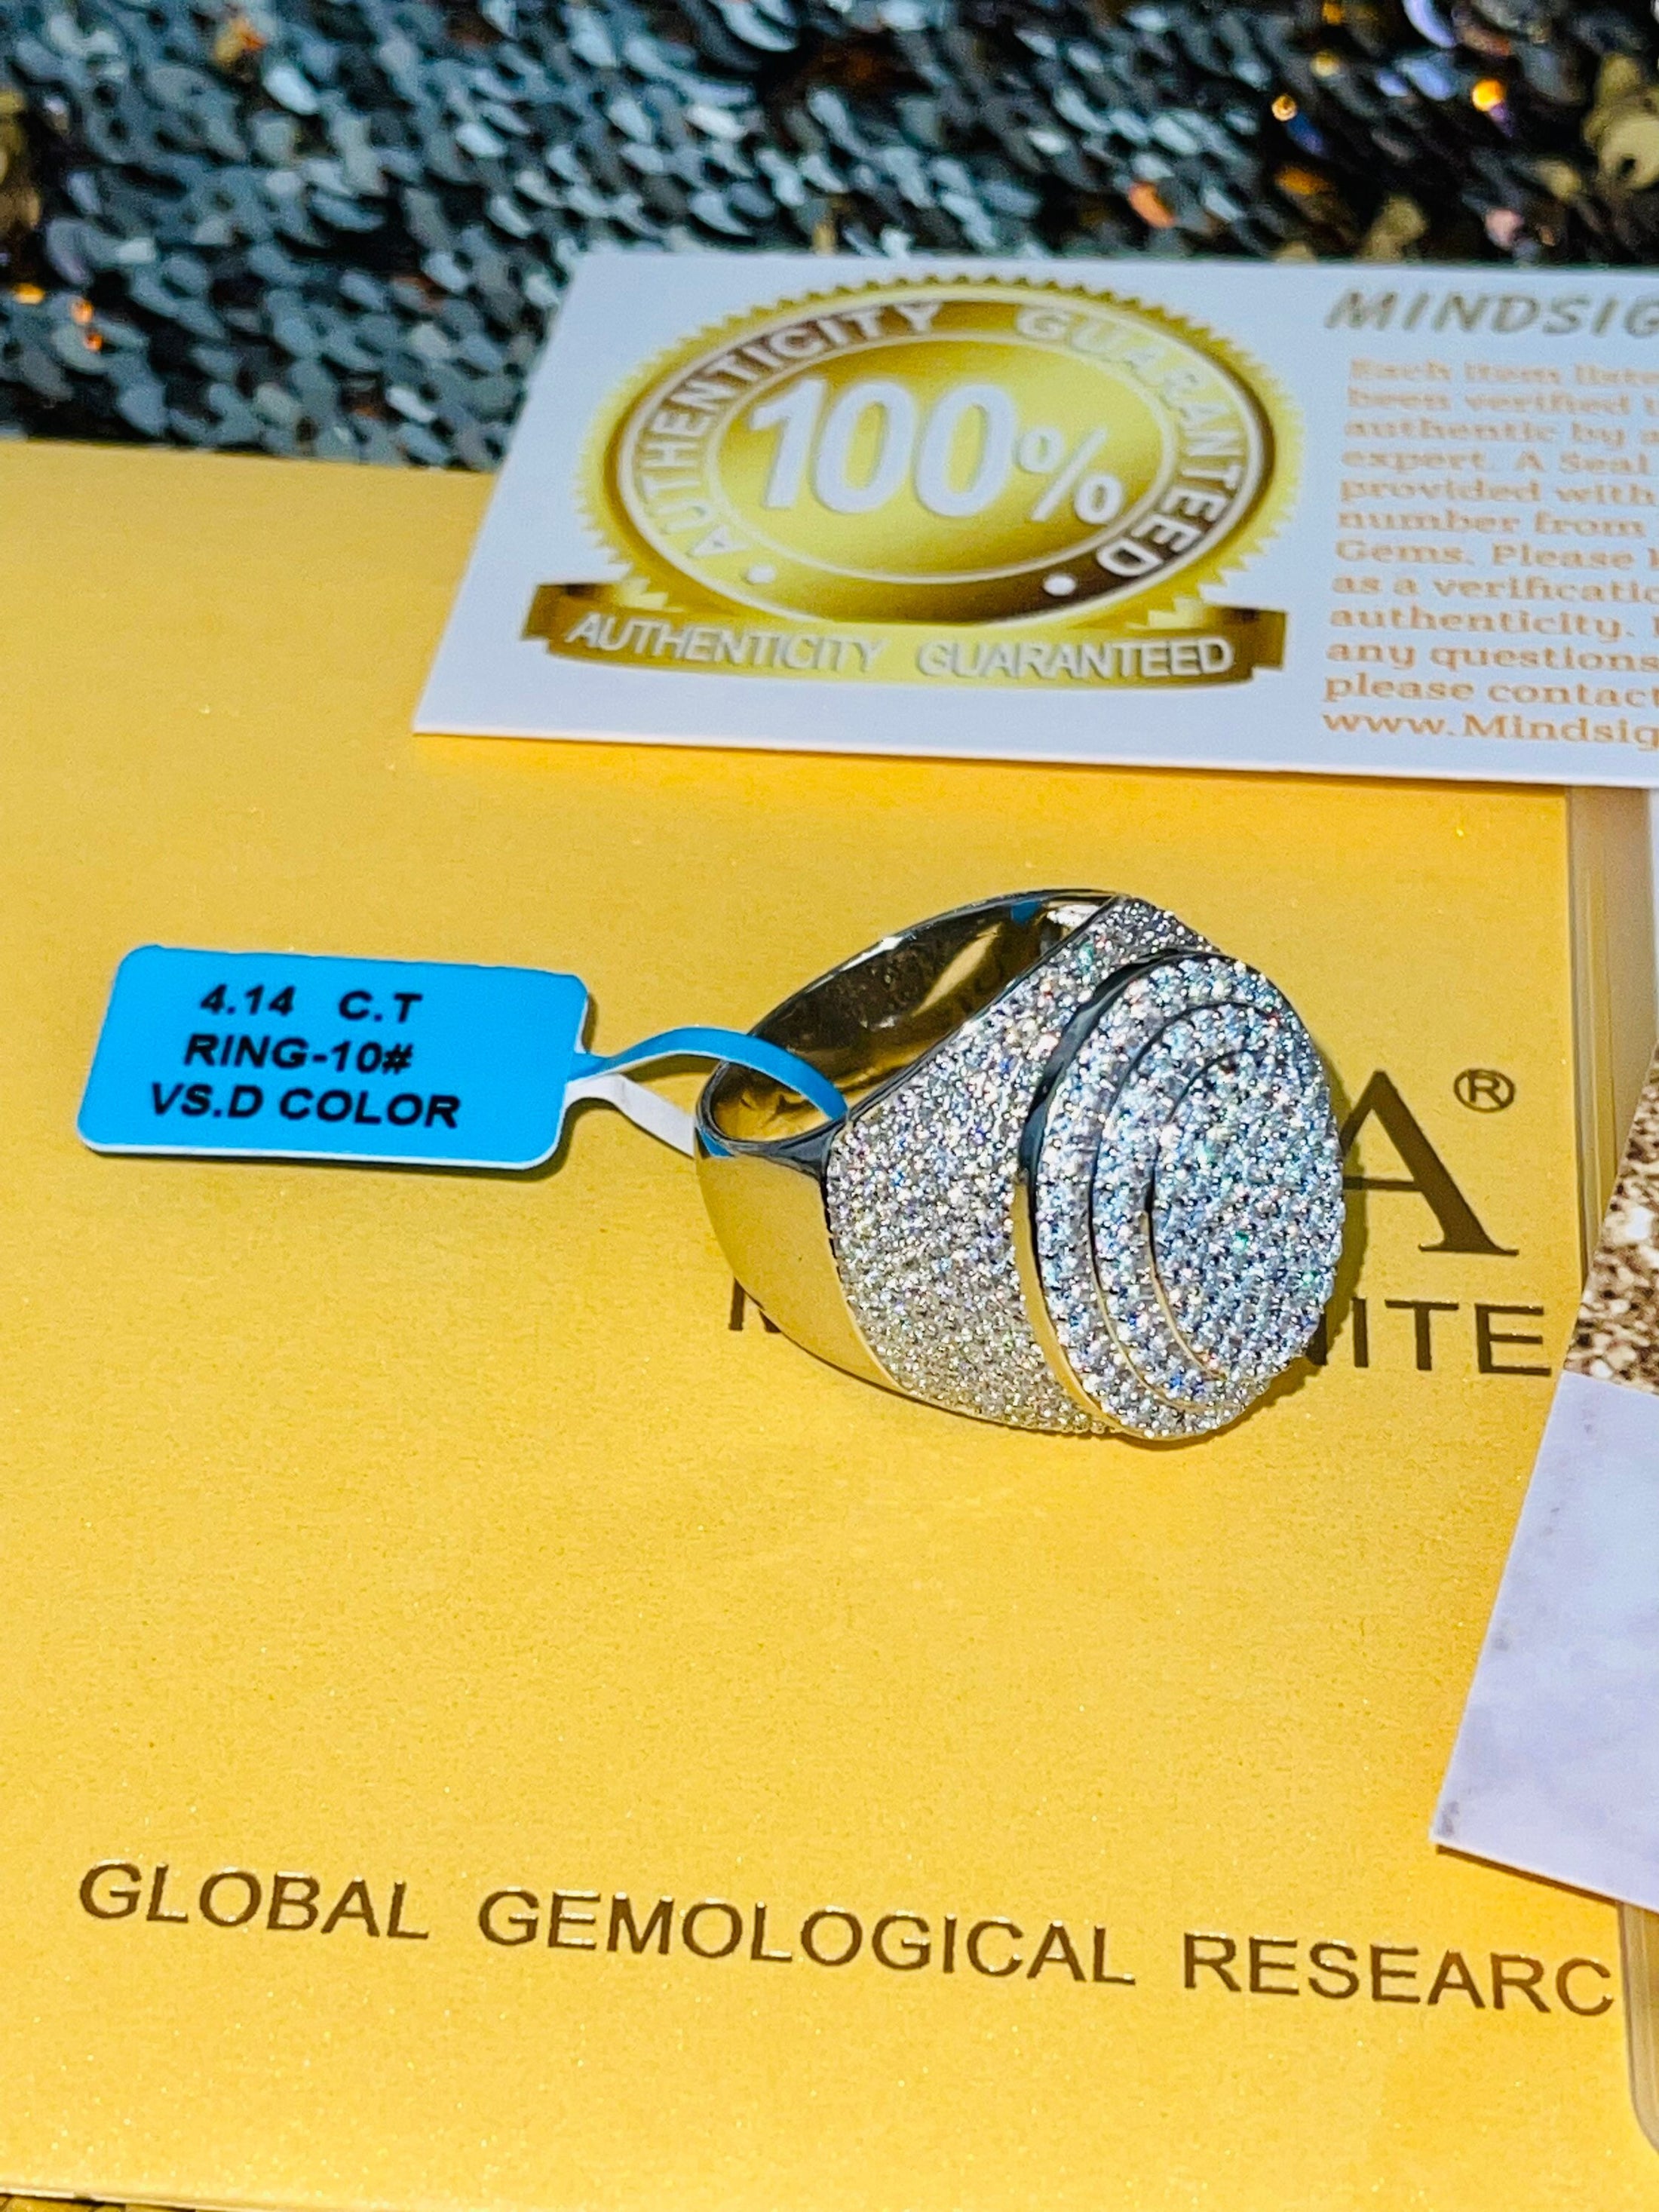 VVS GRA Certified Mens Iced out Ring, 14k Gold Vermeil 925 Moissanite Diamond Custom ring for men, Best Gift For Him, Christmass Gift Ring